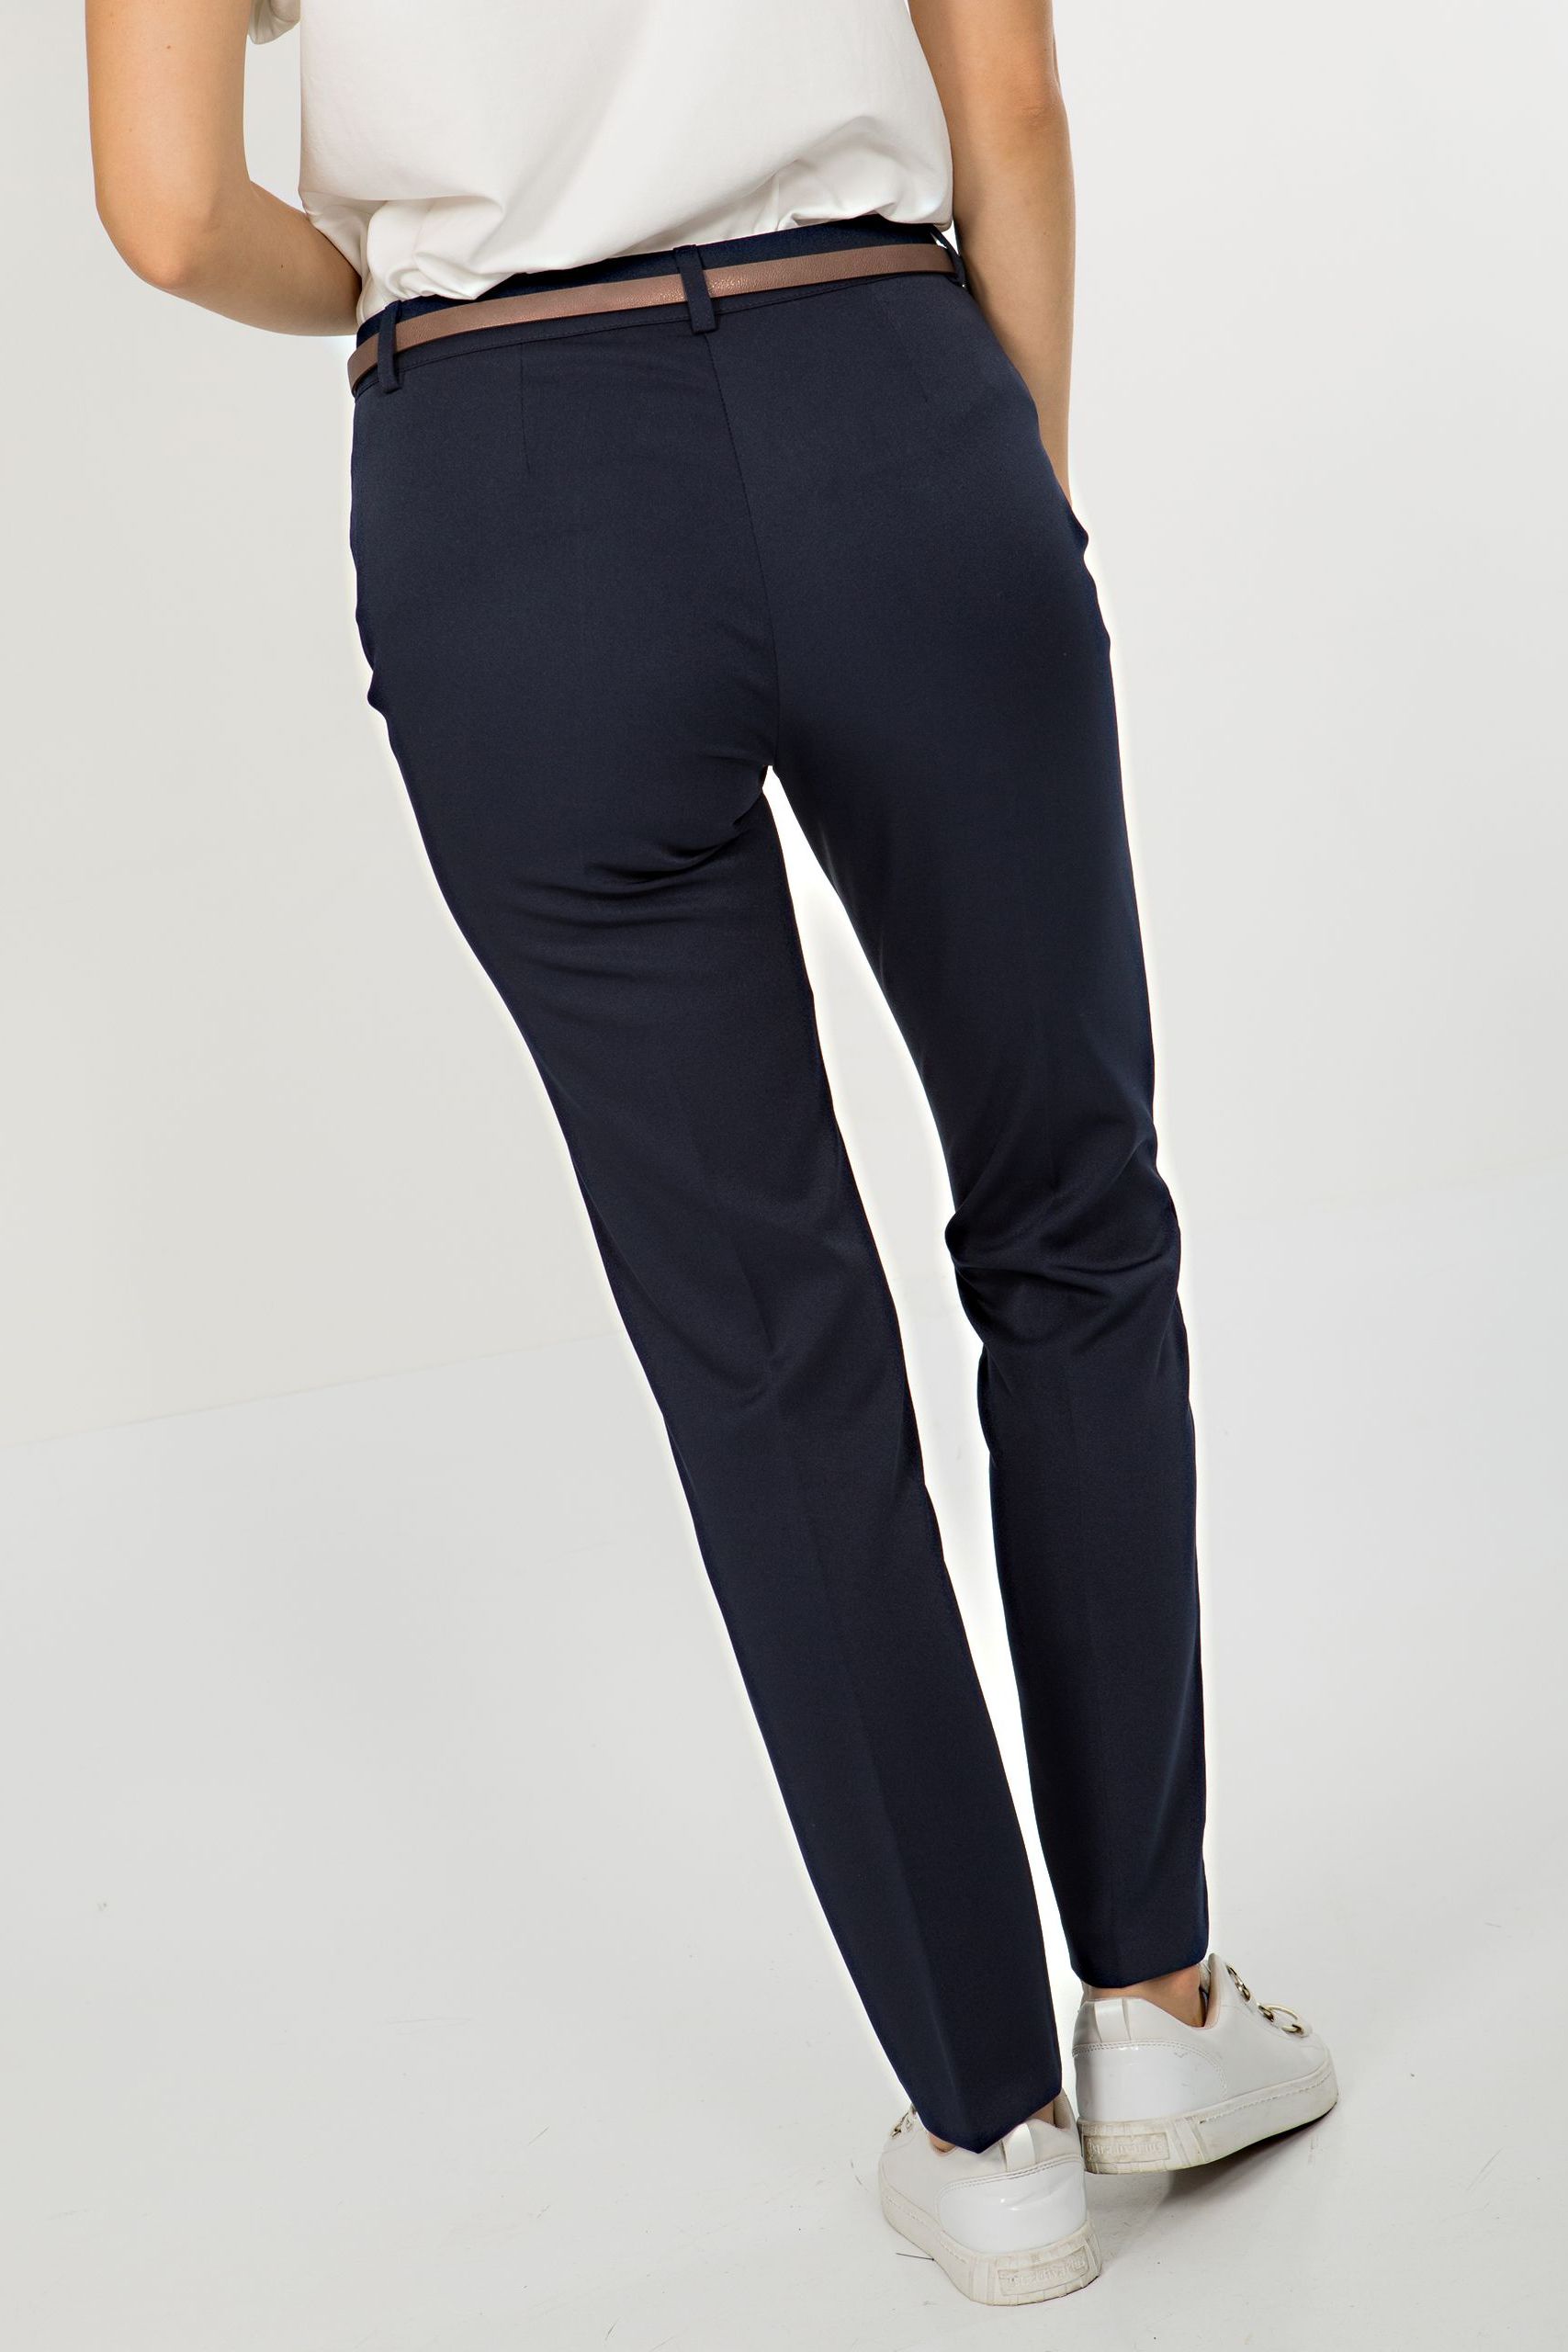 Комфортные женские брюки Priz(фото3)